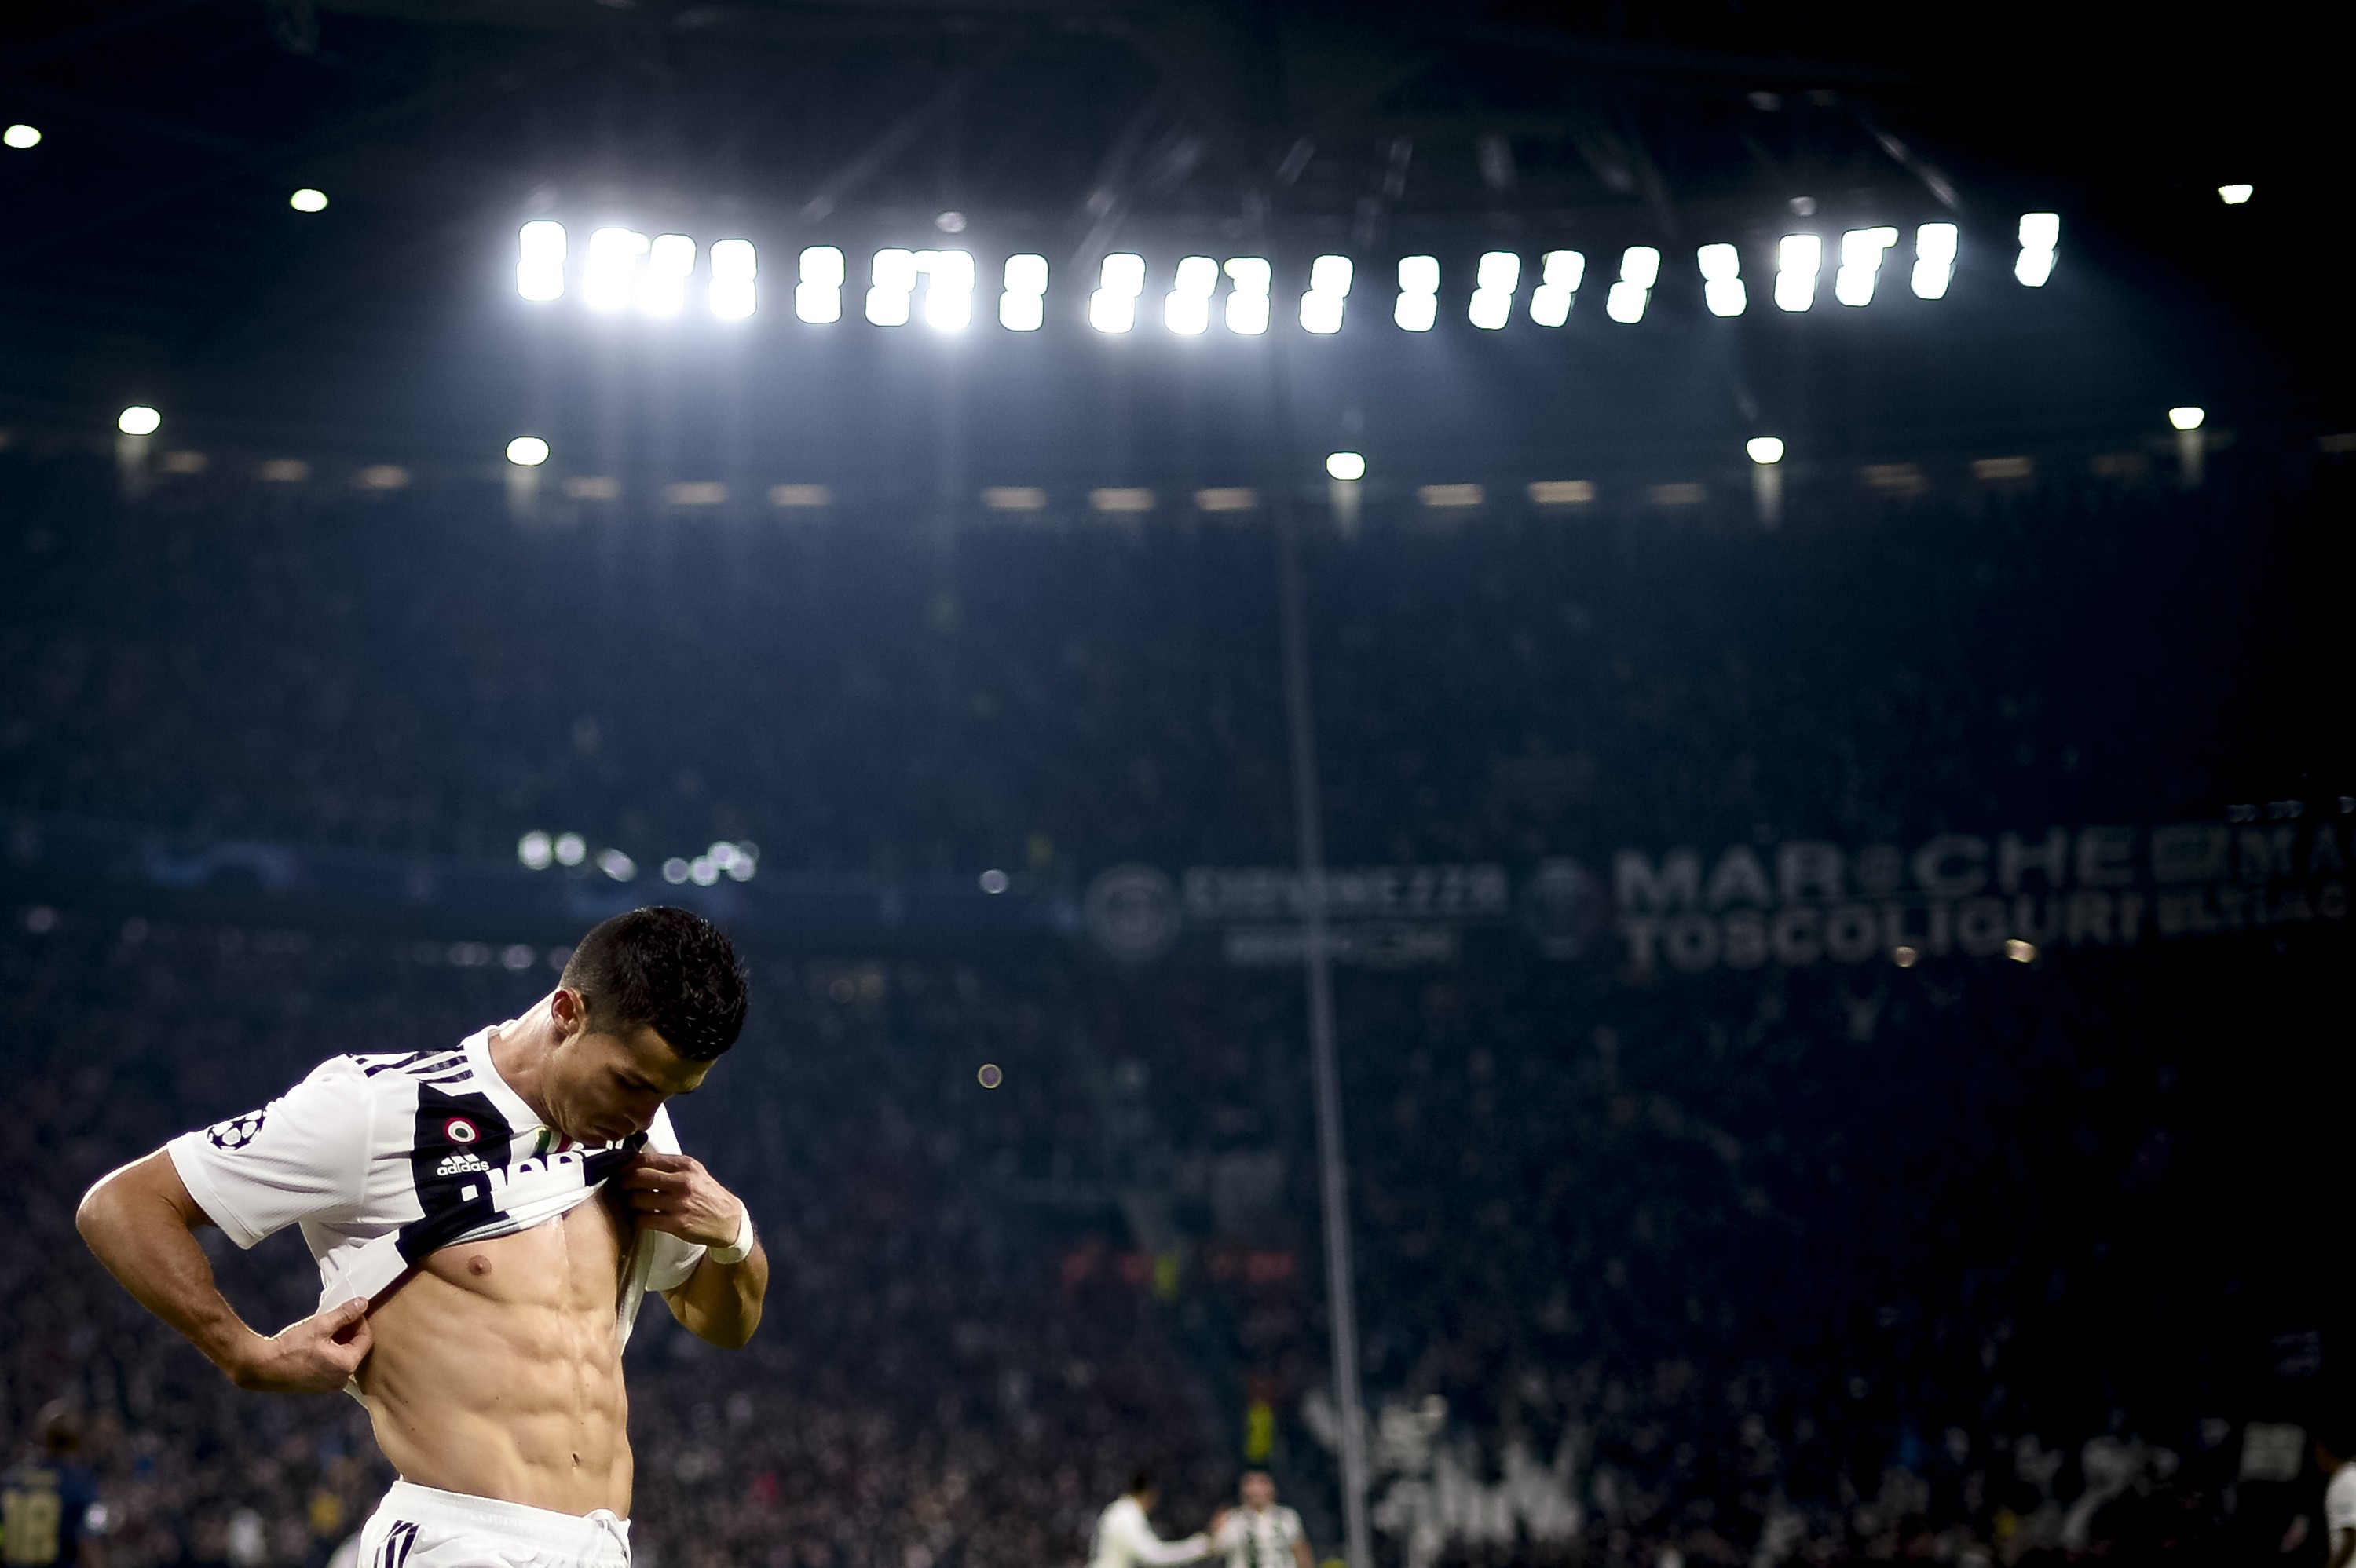 Cristiano Ronaldo exibindo a barriga definida, assim como faz em quase todos os jogos (Foto: Getty Images)